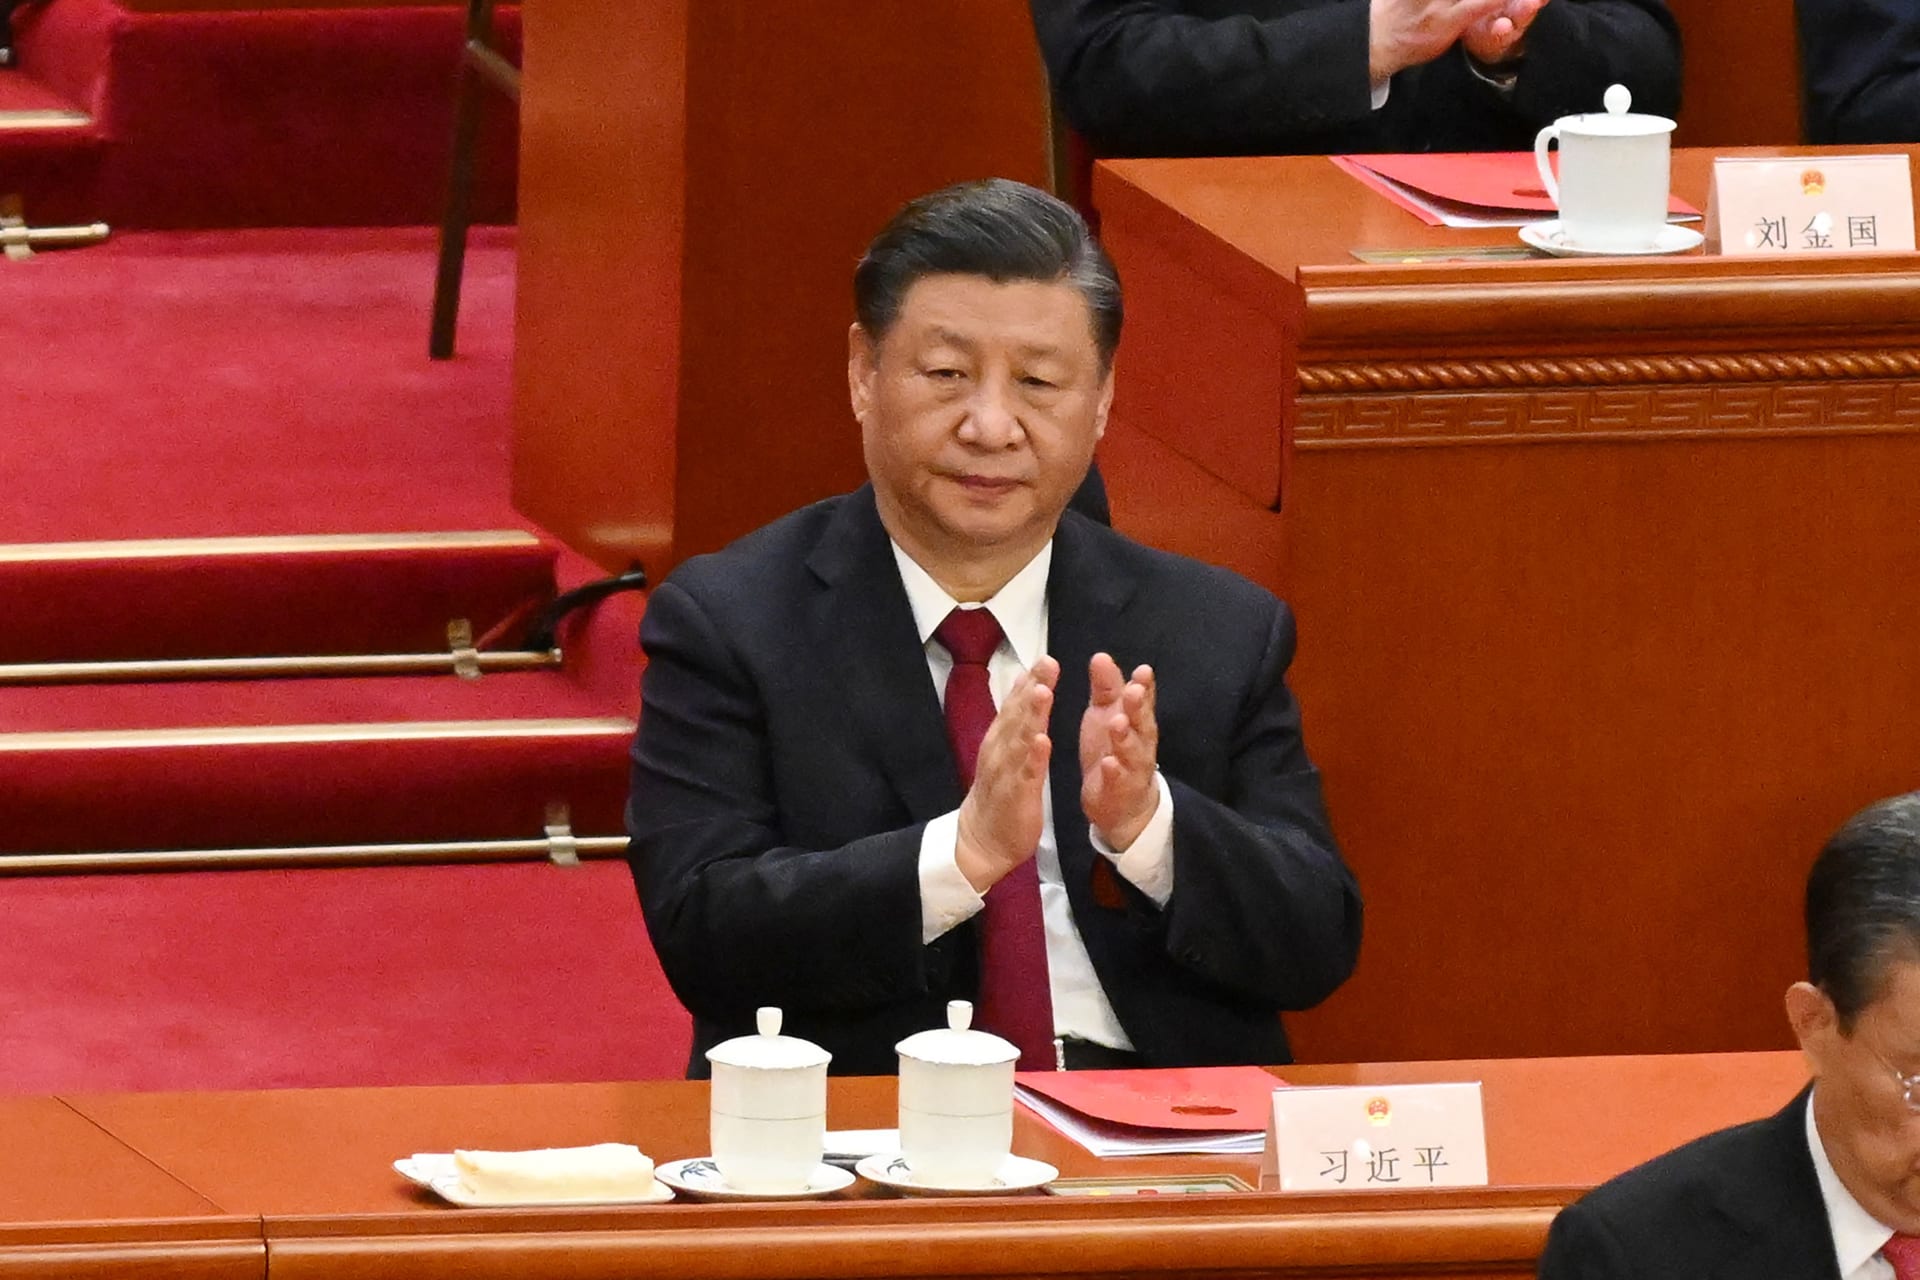 في أول خطابات الولاية الثالثة.. الرئيس الصيني يتعهد بإعادة توحيد تايوان وتحديث الجيش